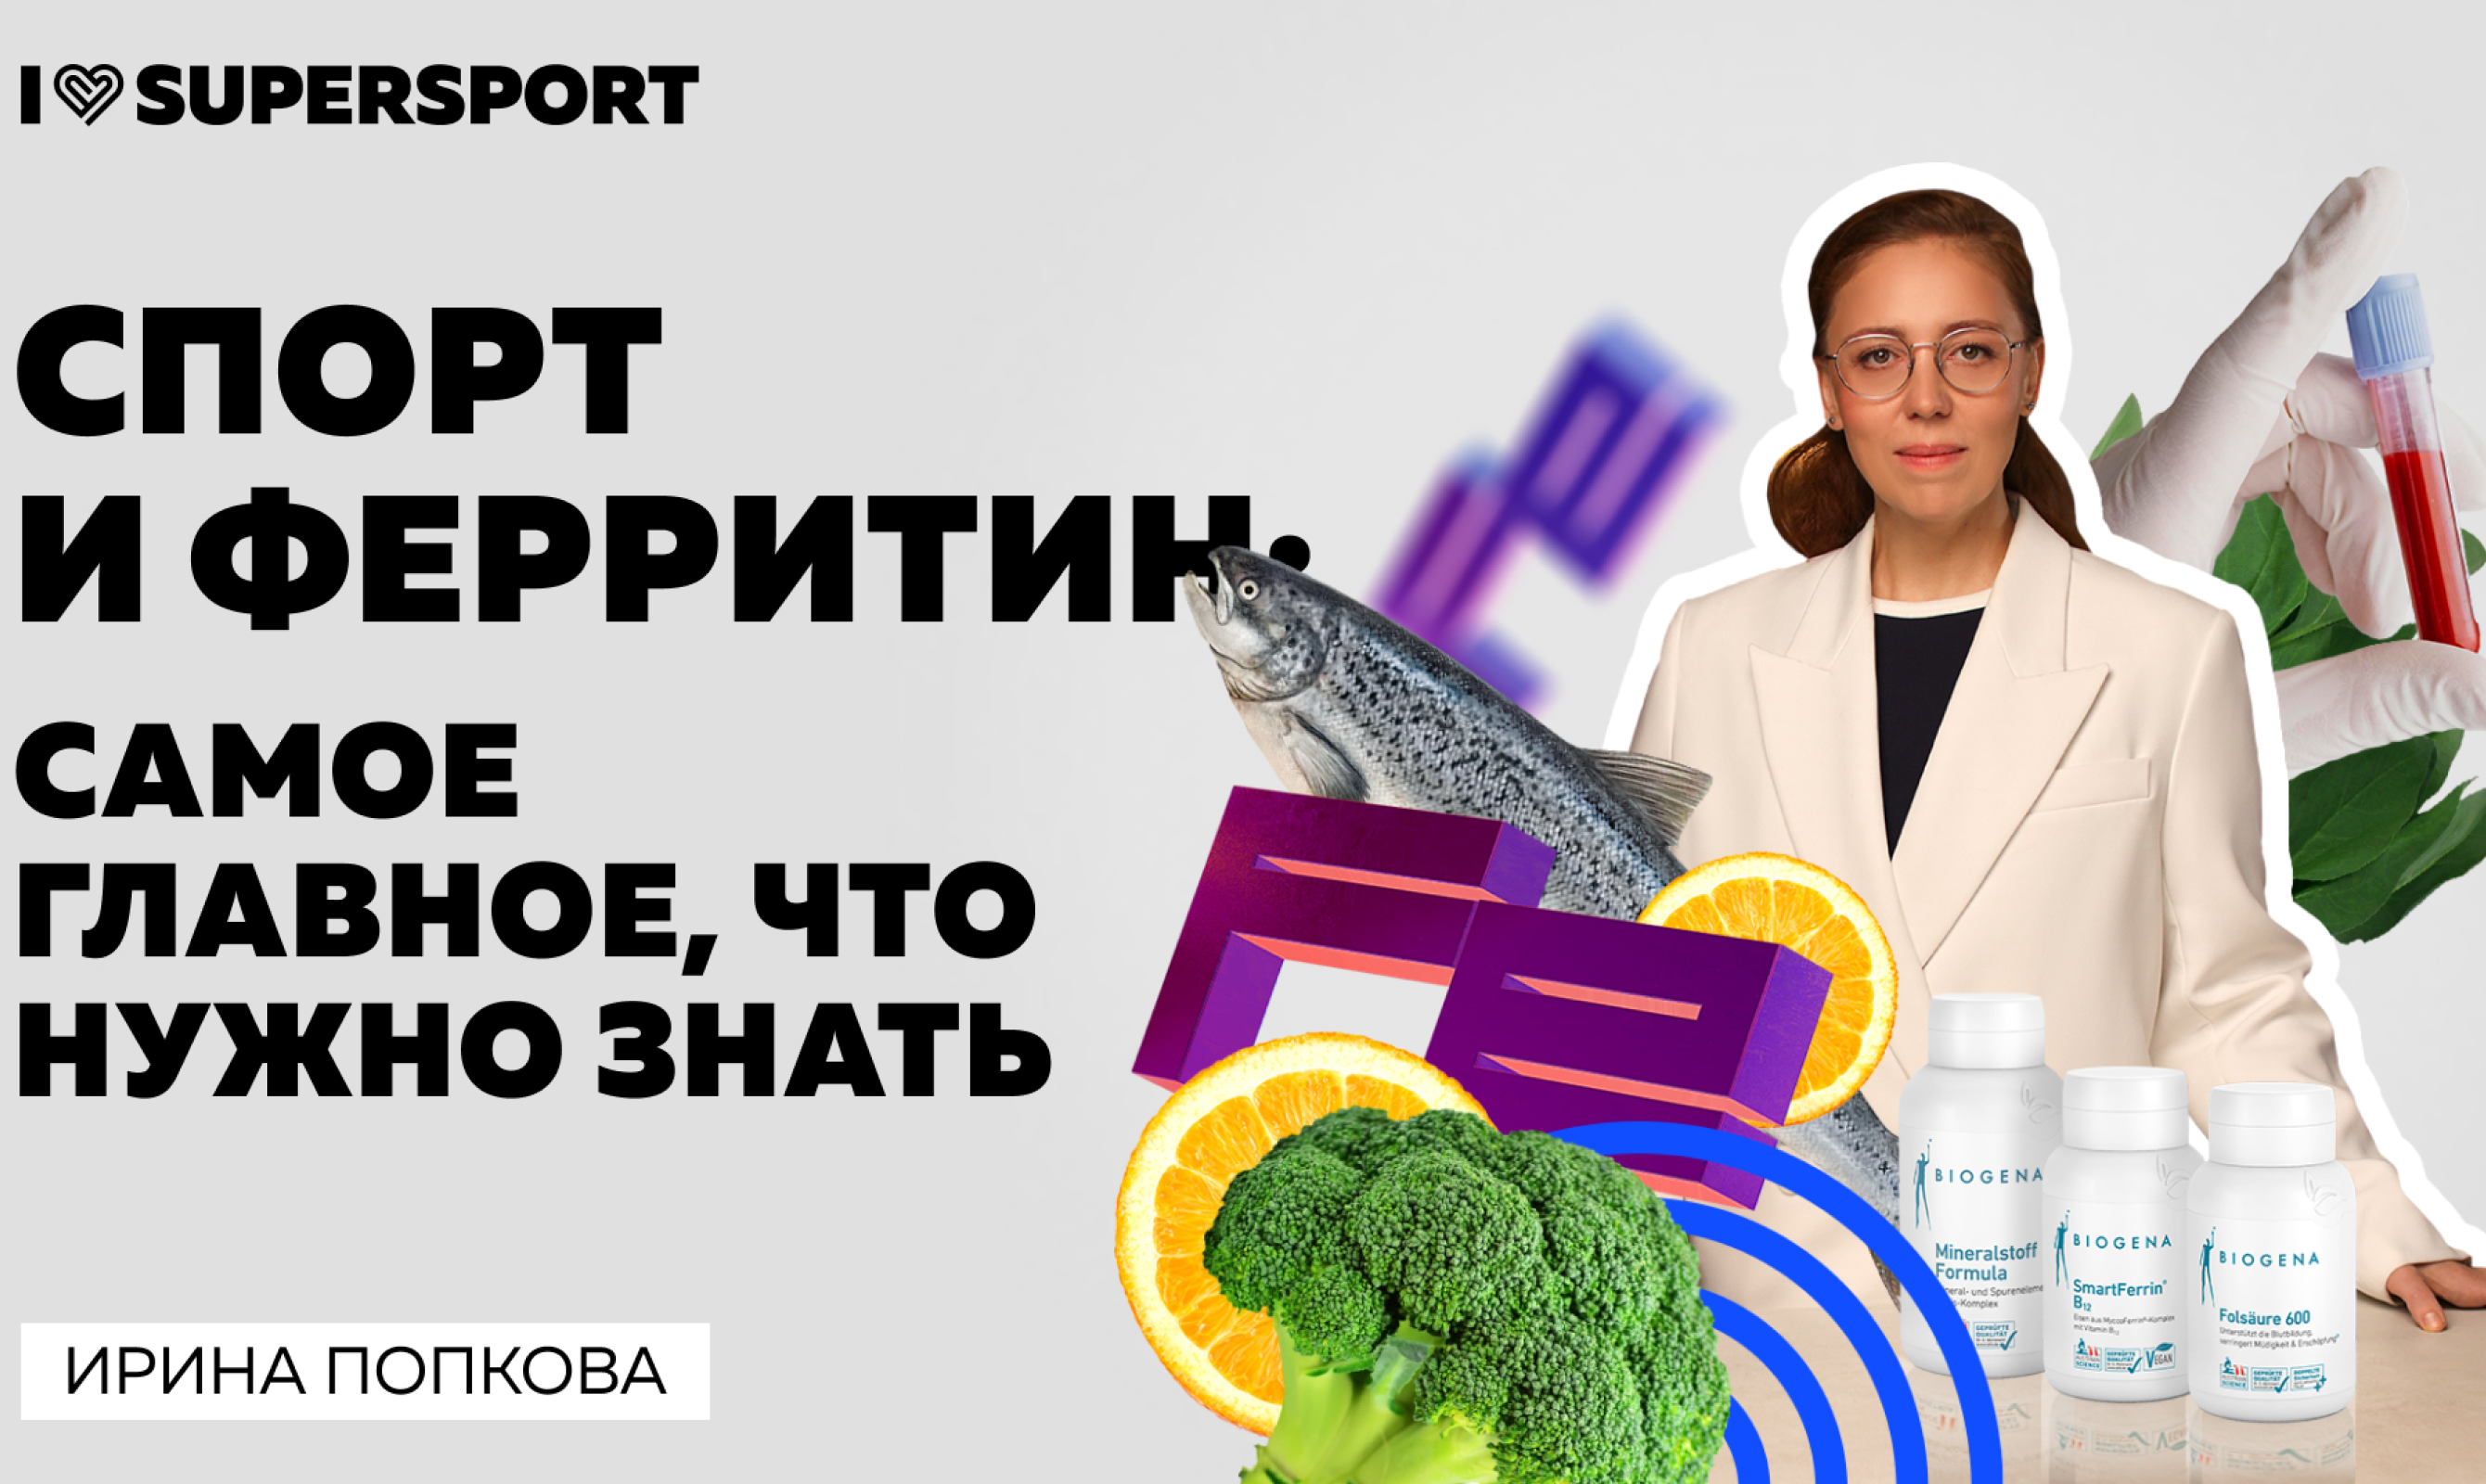 Эксперт Biogena Ирина Попкова выступила в прямом эфире Youtube-канала I Love Supersport 